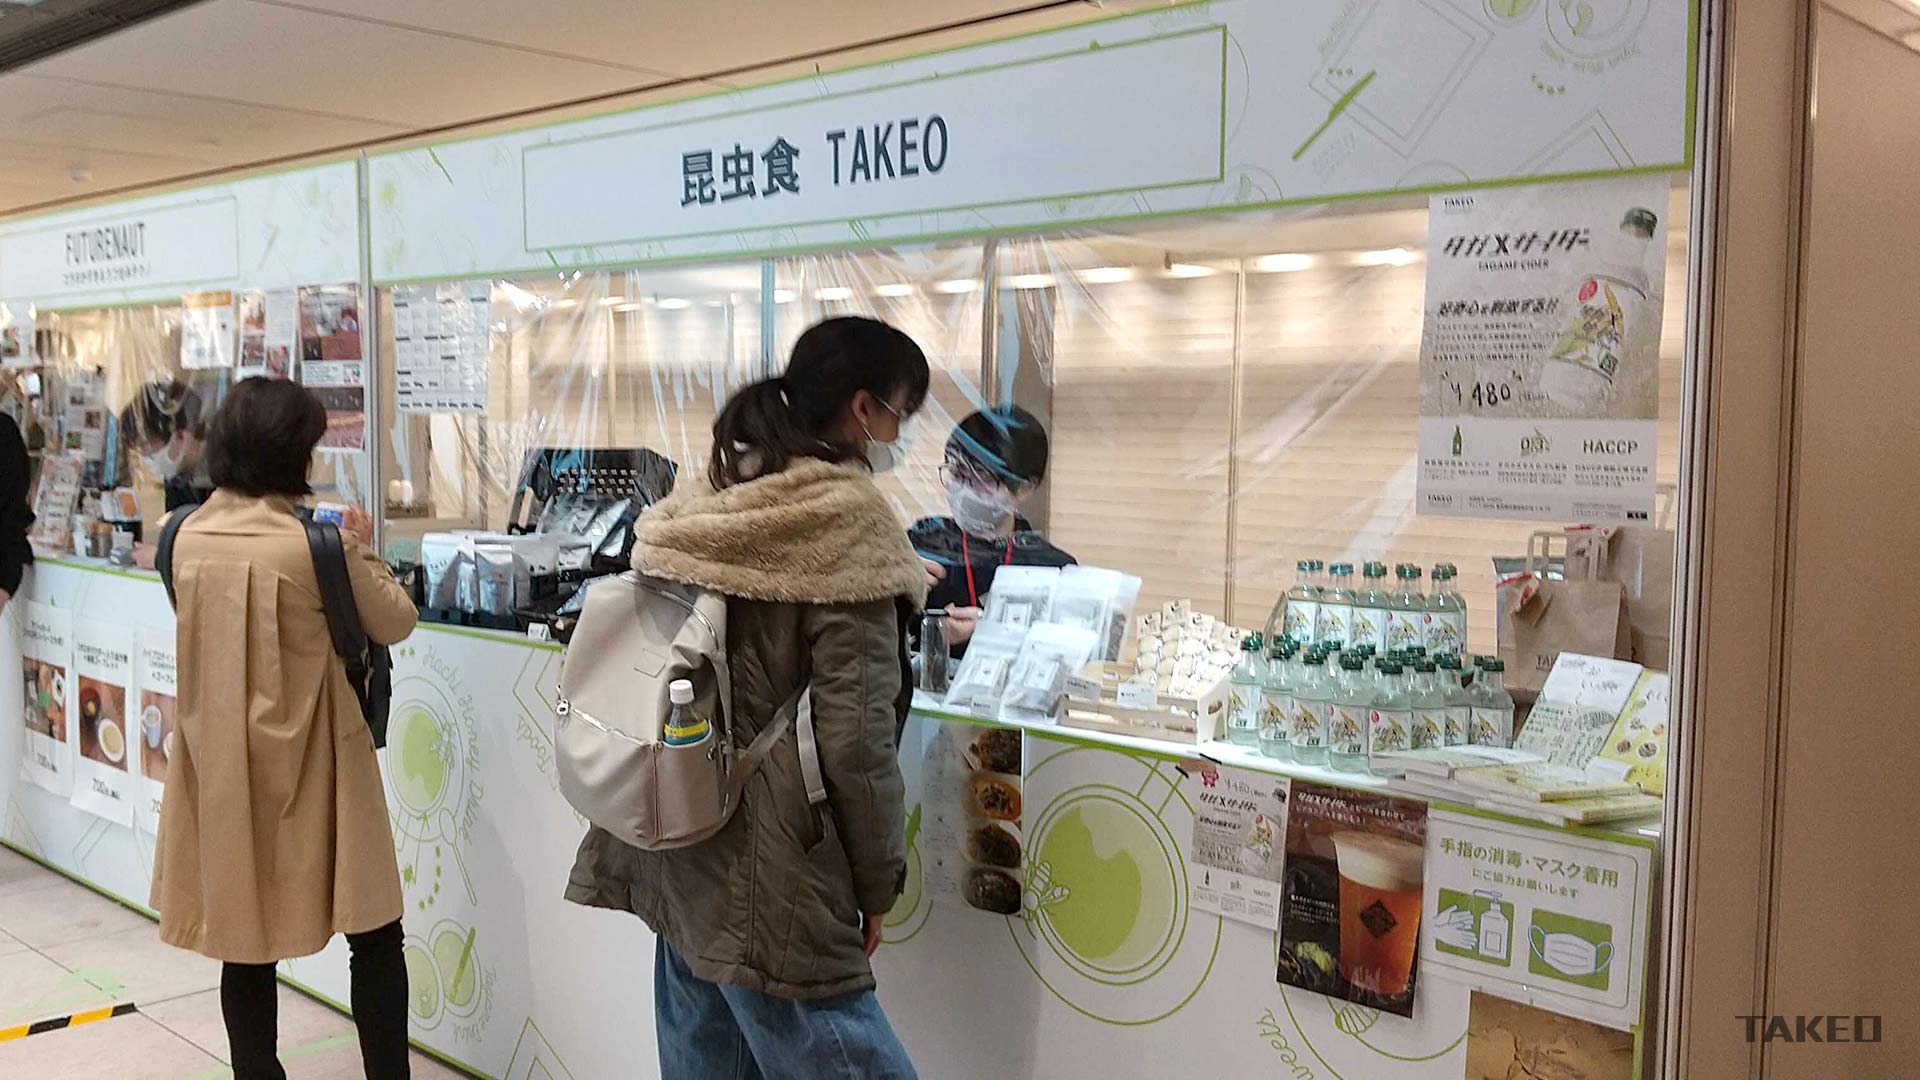 虫グルメフェス 昆虫食 東京駅 東京イベント